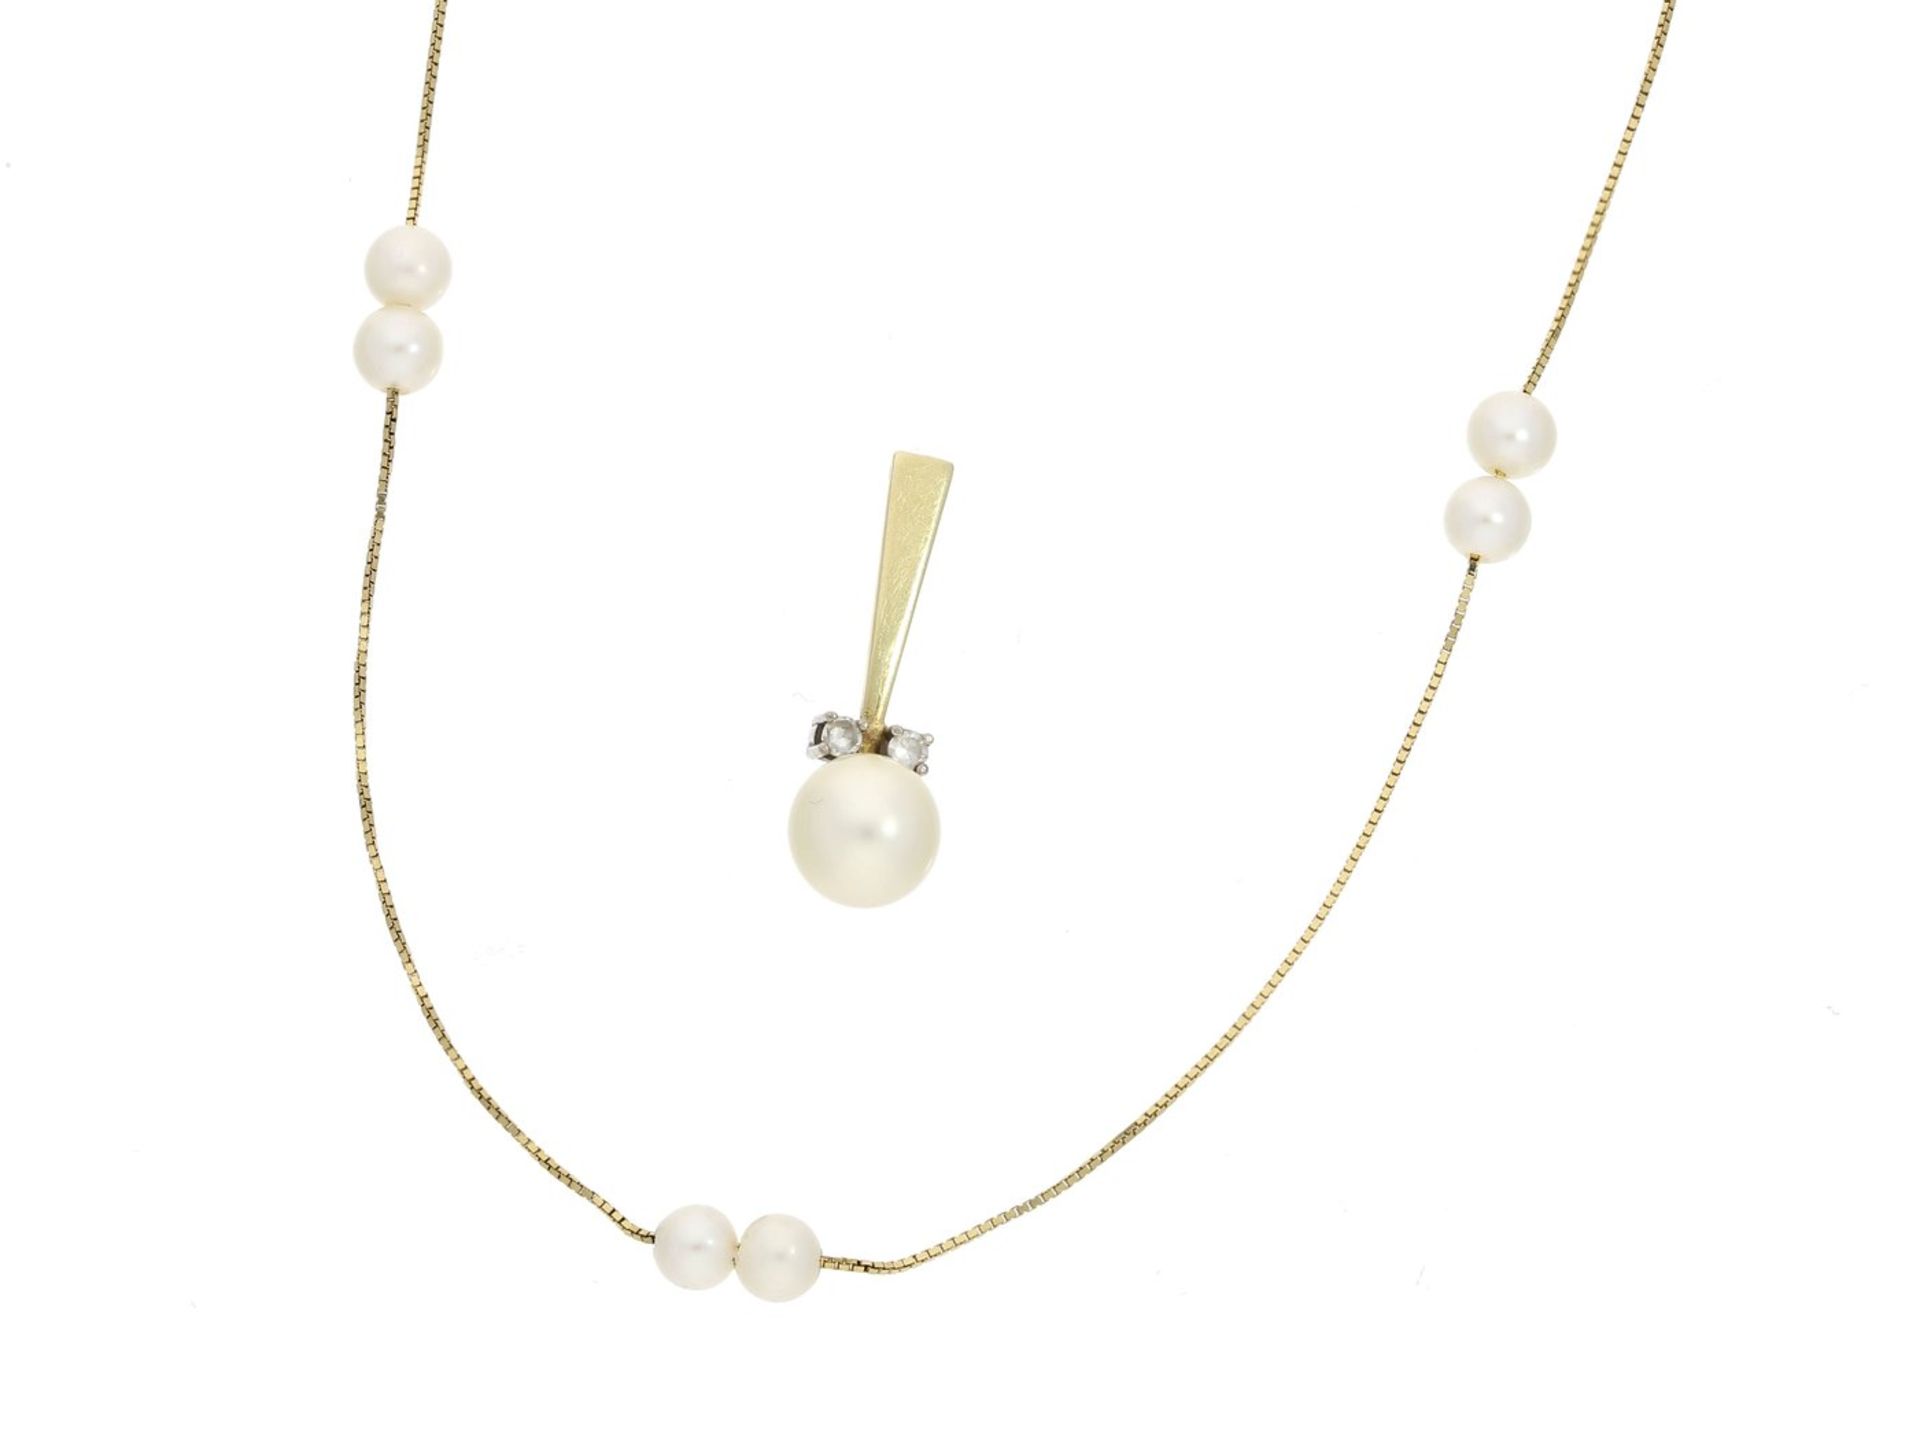 Kette/Collier/Anhänger: sehr feine Goldkette mit Perlenbesatz sowie Diamant/Perlen